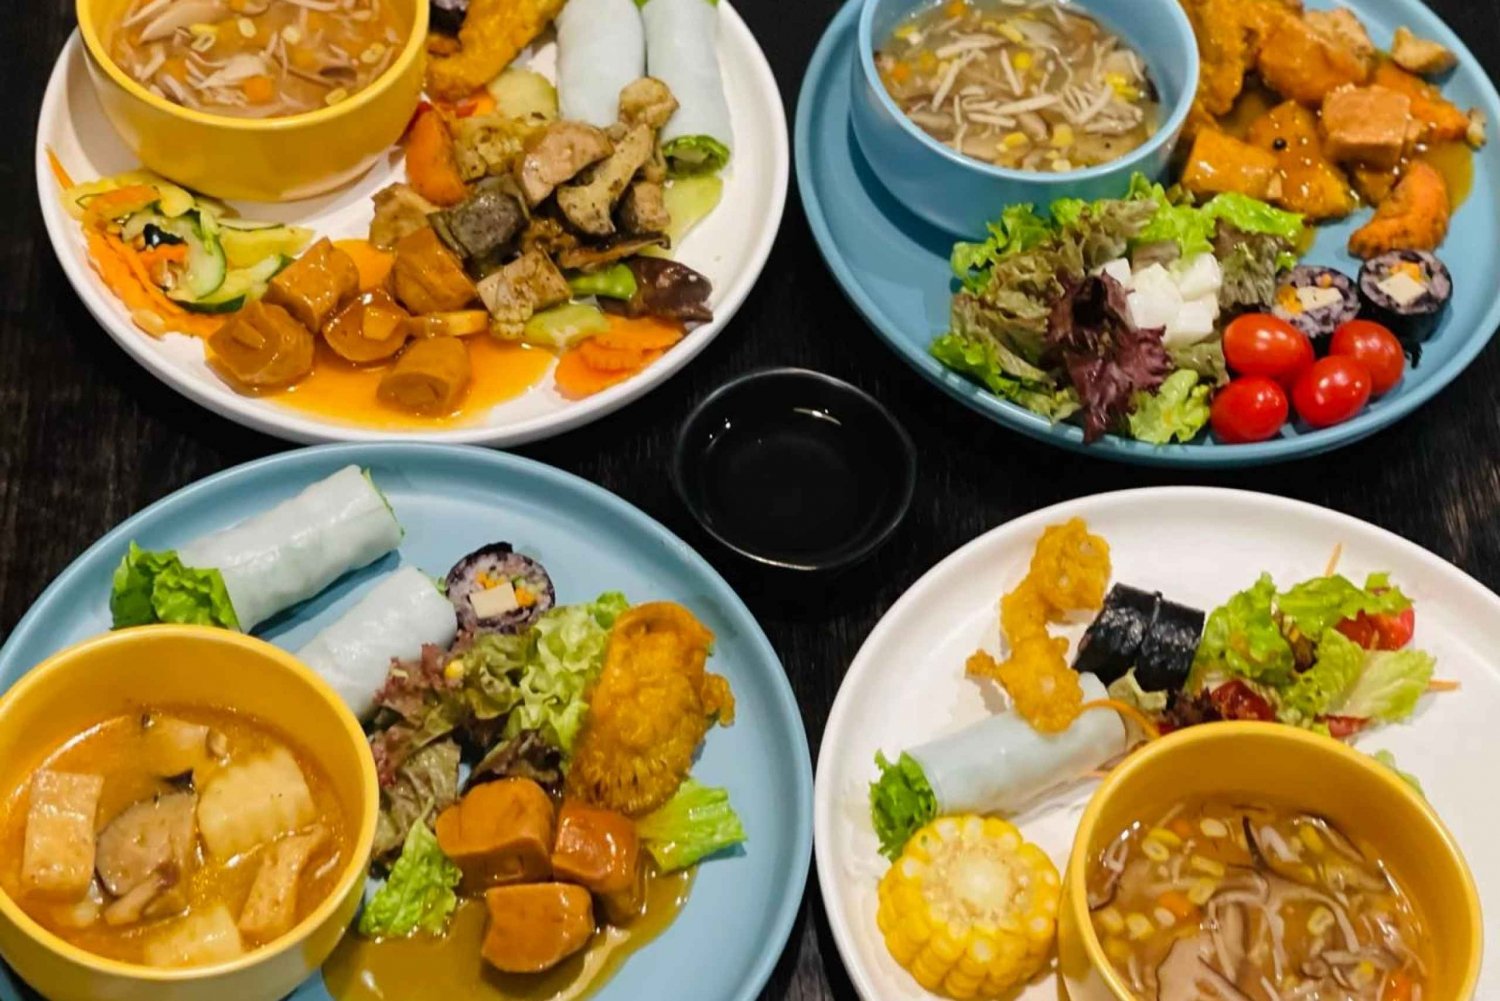 De Hanói: Tour de comida vegetariana no bairro antigo